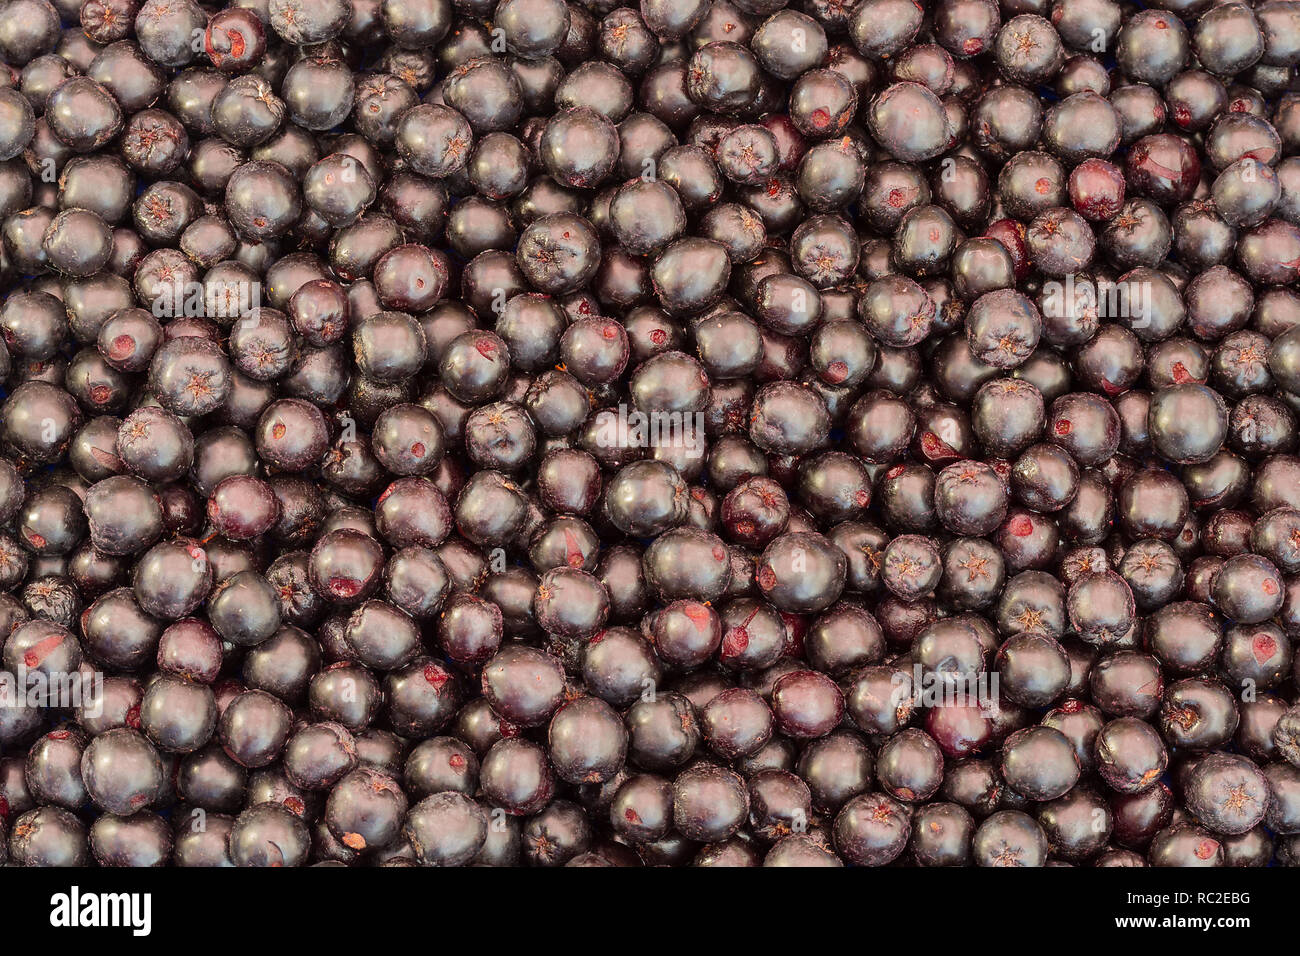 Background of fresh aronia berries. Stock Photo